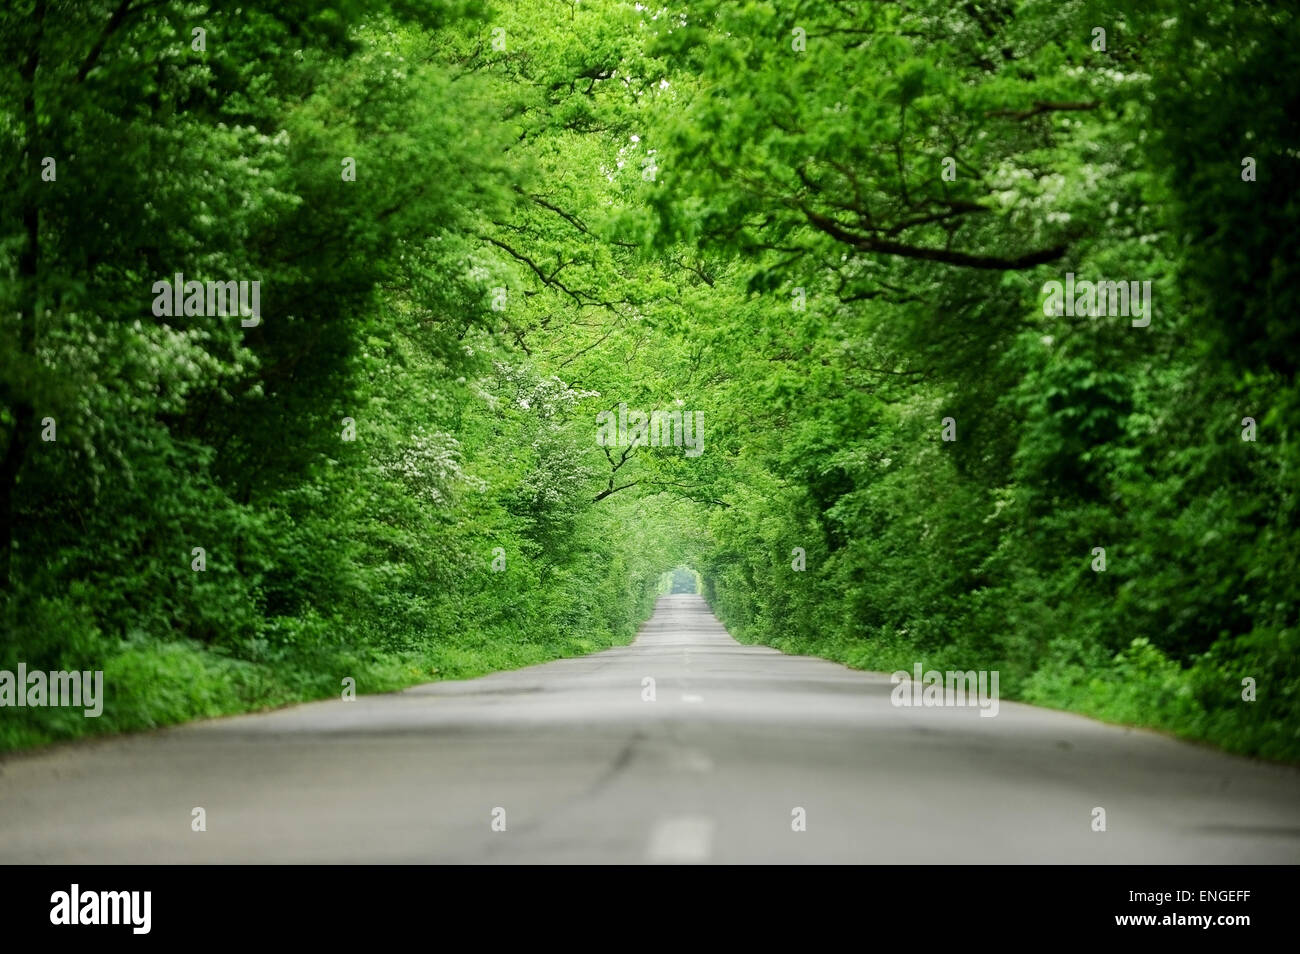 Vide route asphaltée à deux voies à travers une forêt qui ressemble à un tunnel d'arbres Banque D'Images